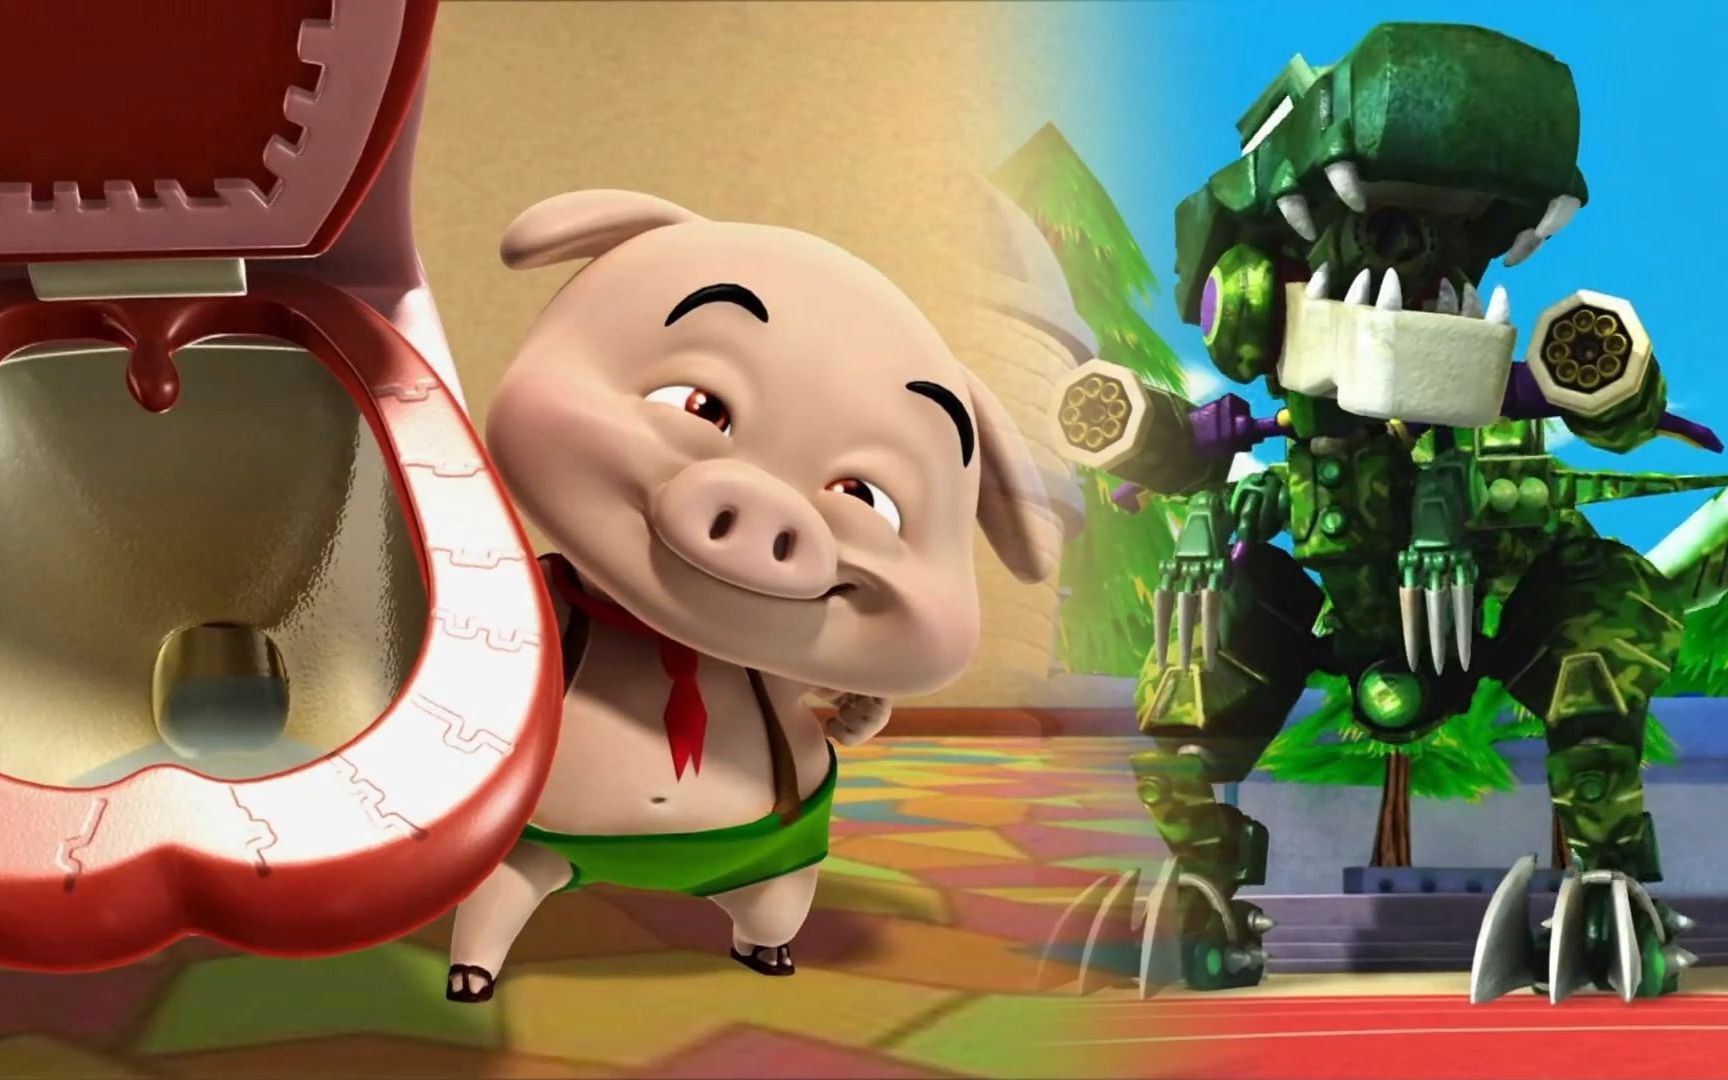 猪猪侠积木世界:小呆呆的神操作戏耍猪猪侠,超人强被完全压制!